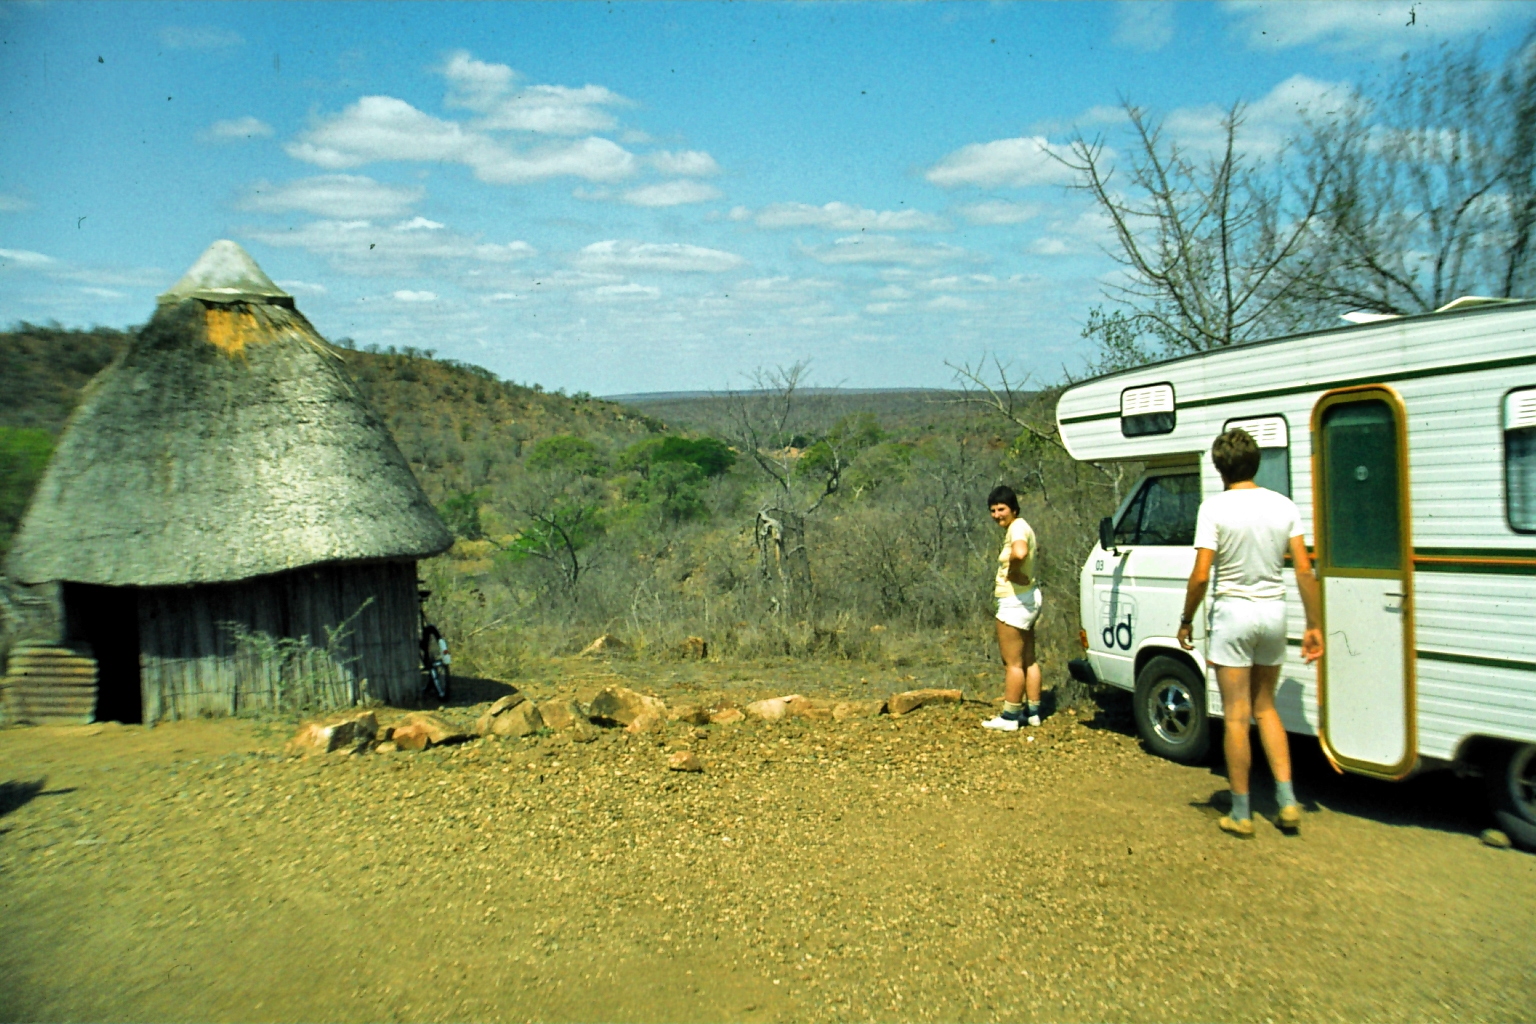 1983  Kruger National Park, South Africa